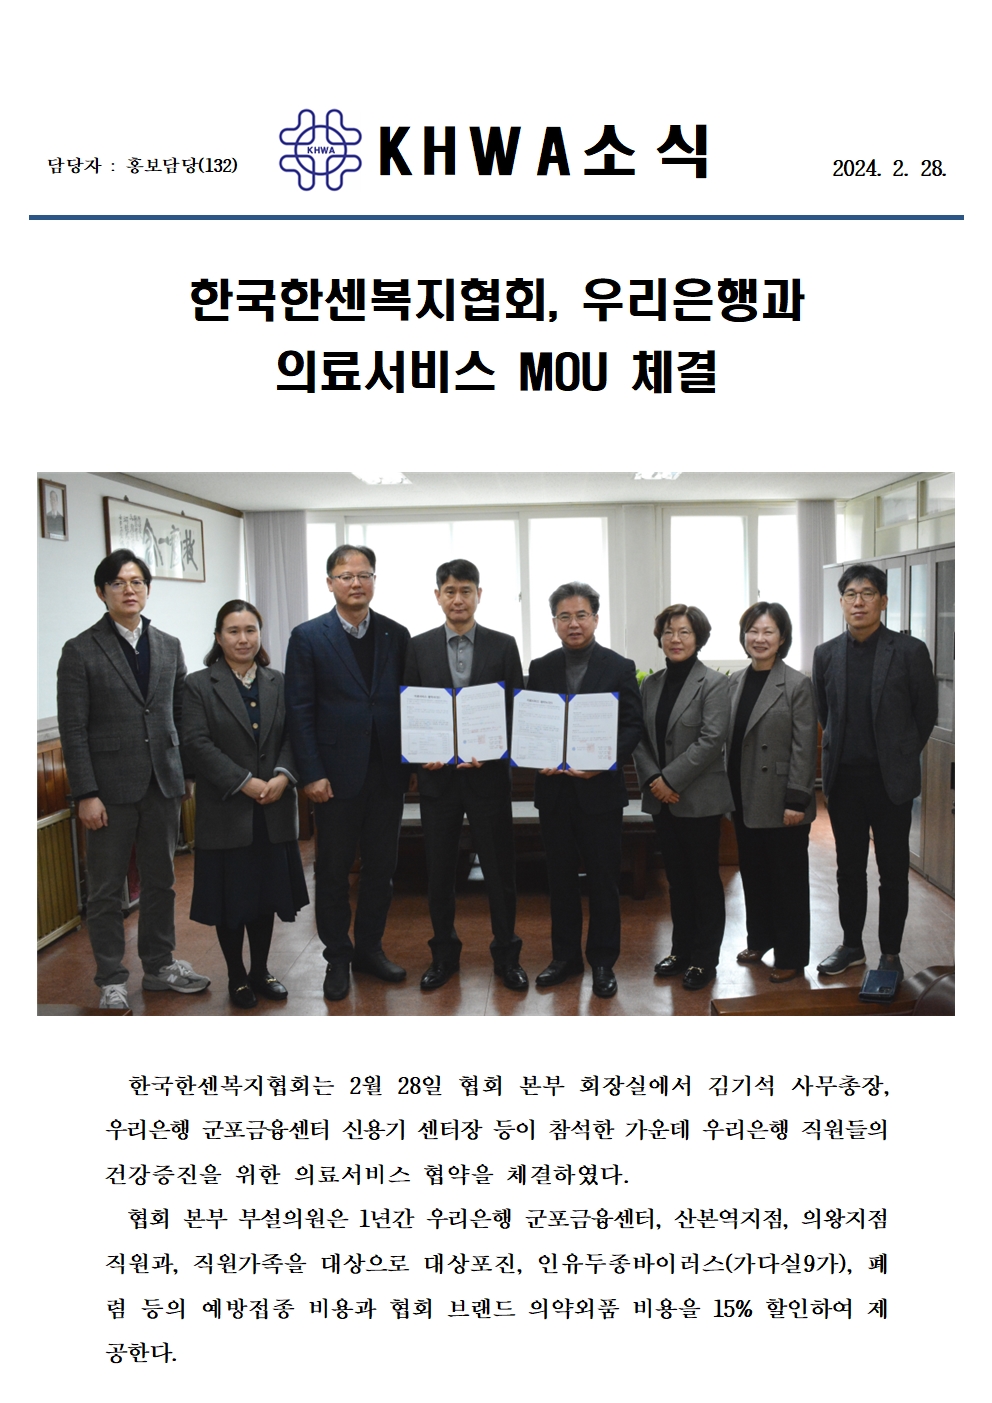 한국한센복지협회, 우리은행과 의료서비스 MOU체결